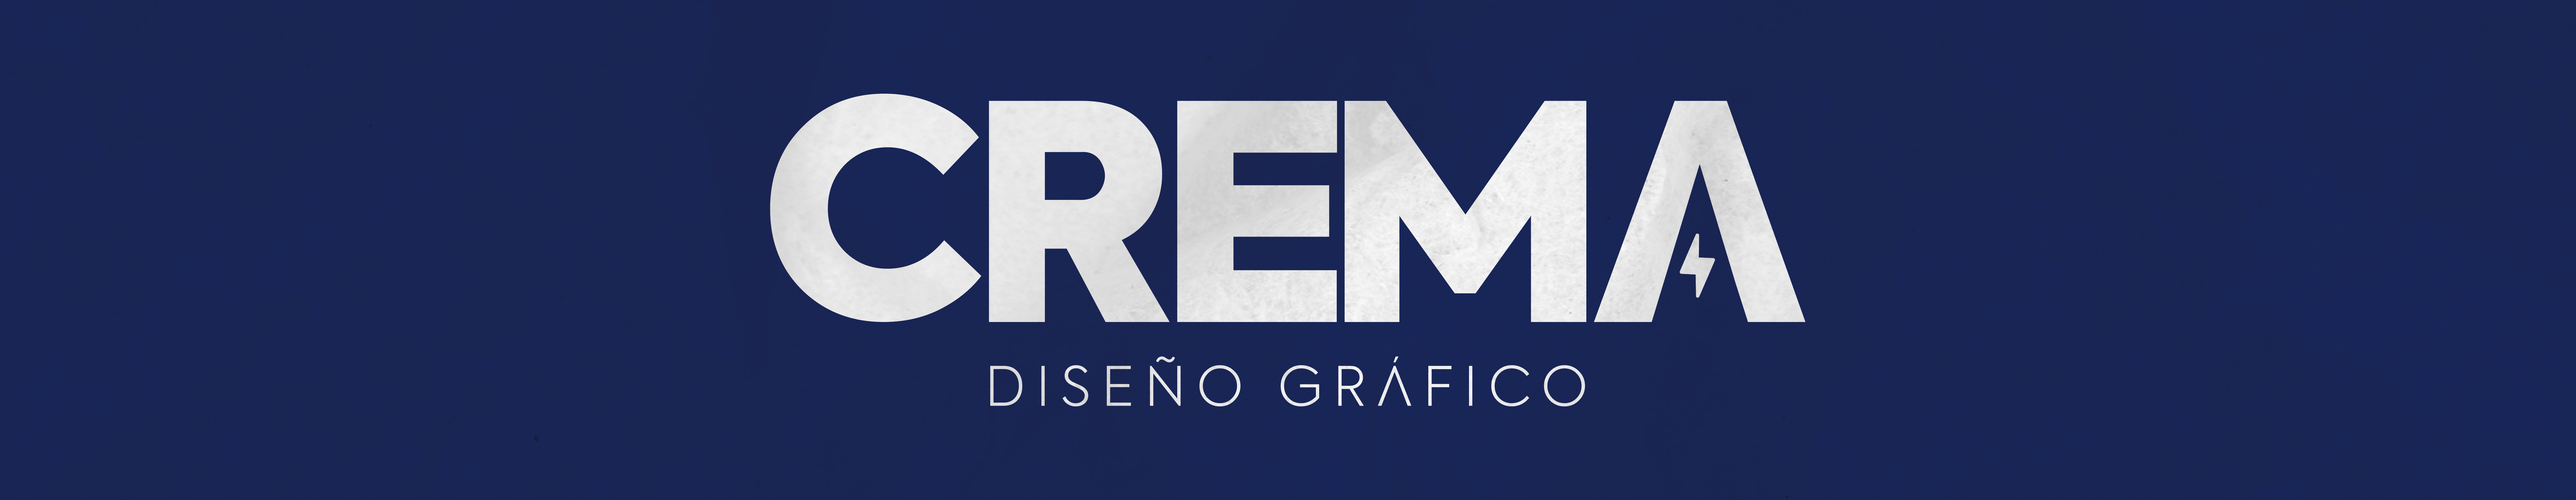 Andrea Crema's profile banner